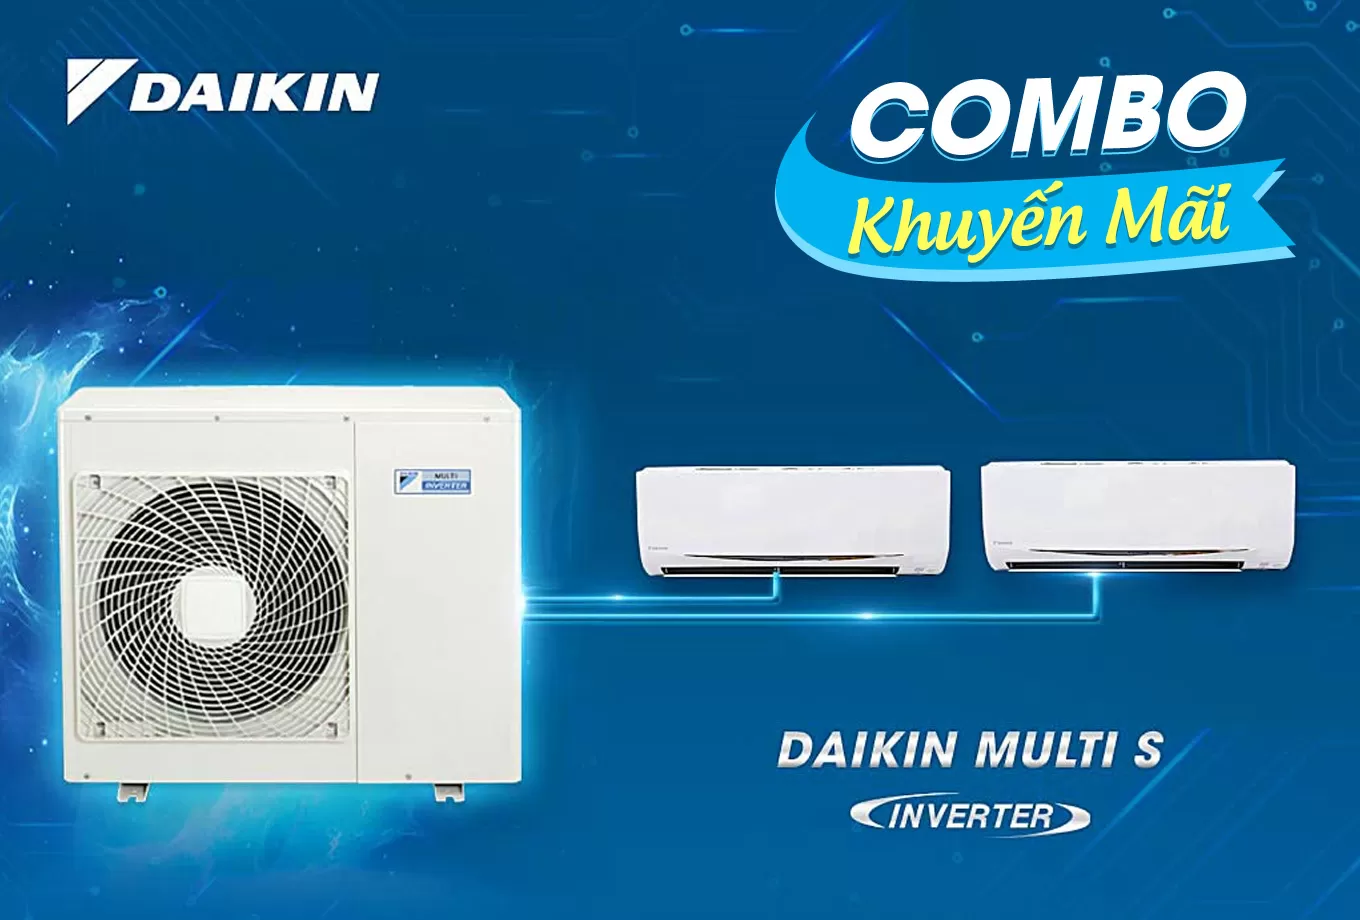 (Combo khuyến mãi) Hệ thống máy lạnh Daikin multi s Inverter 2.0 HP (2HP Ngựa) - 1 dàn nóng 2 dàn lạnh (1.0 + 1.0 HP (1 Ngựa) MKC50RVMV-CTKC25RVMV+CTKC25RVMV